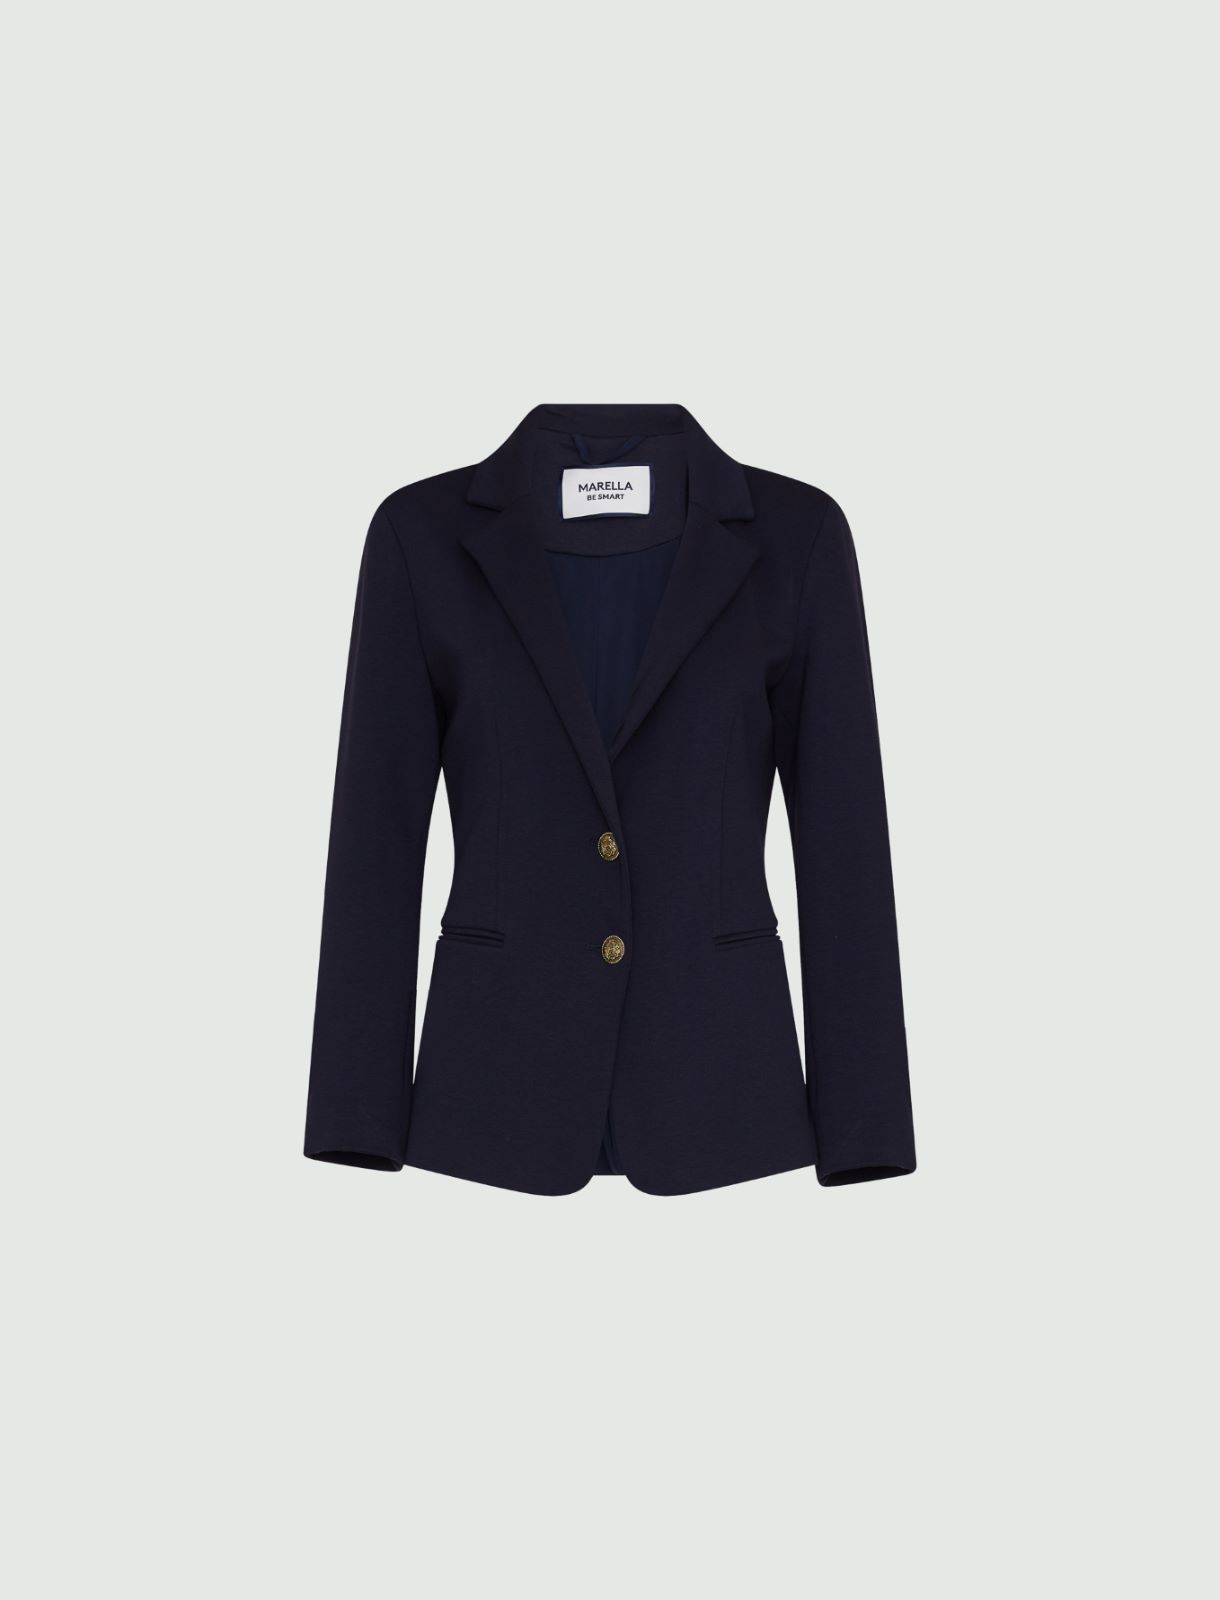 Jersey blazer, navy | Marella